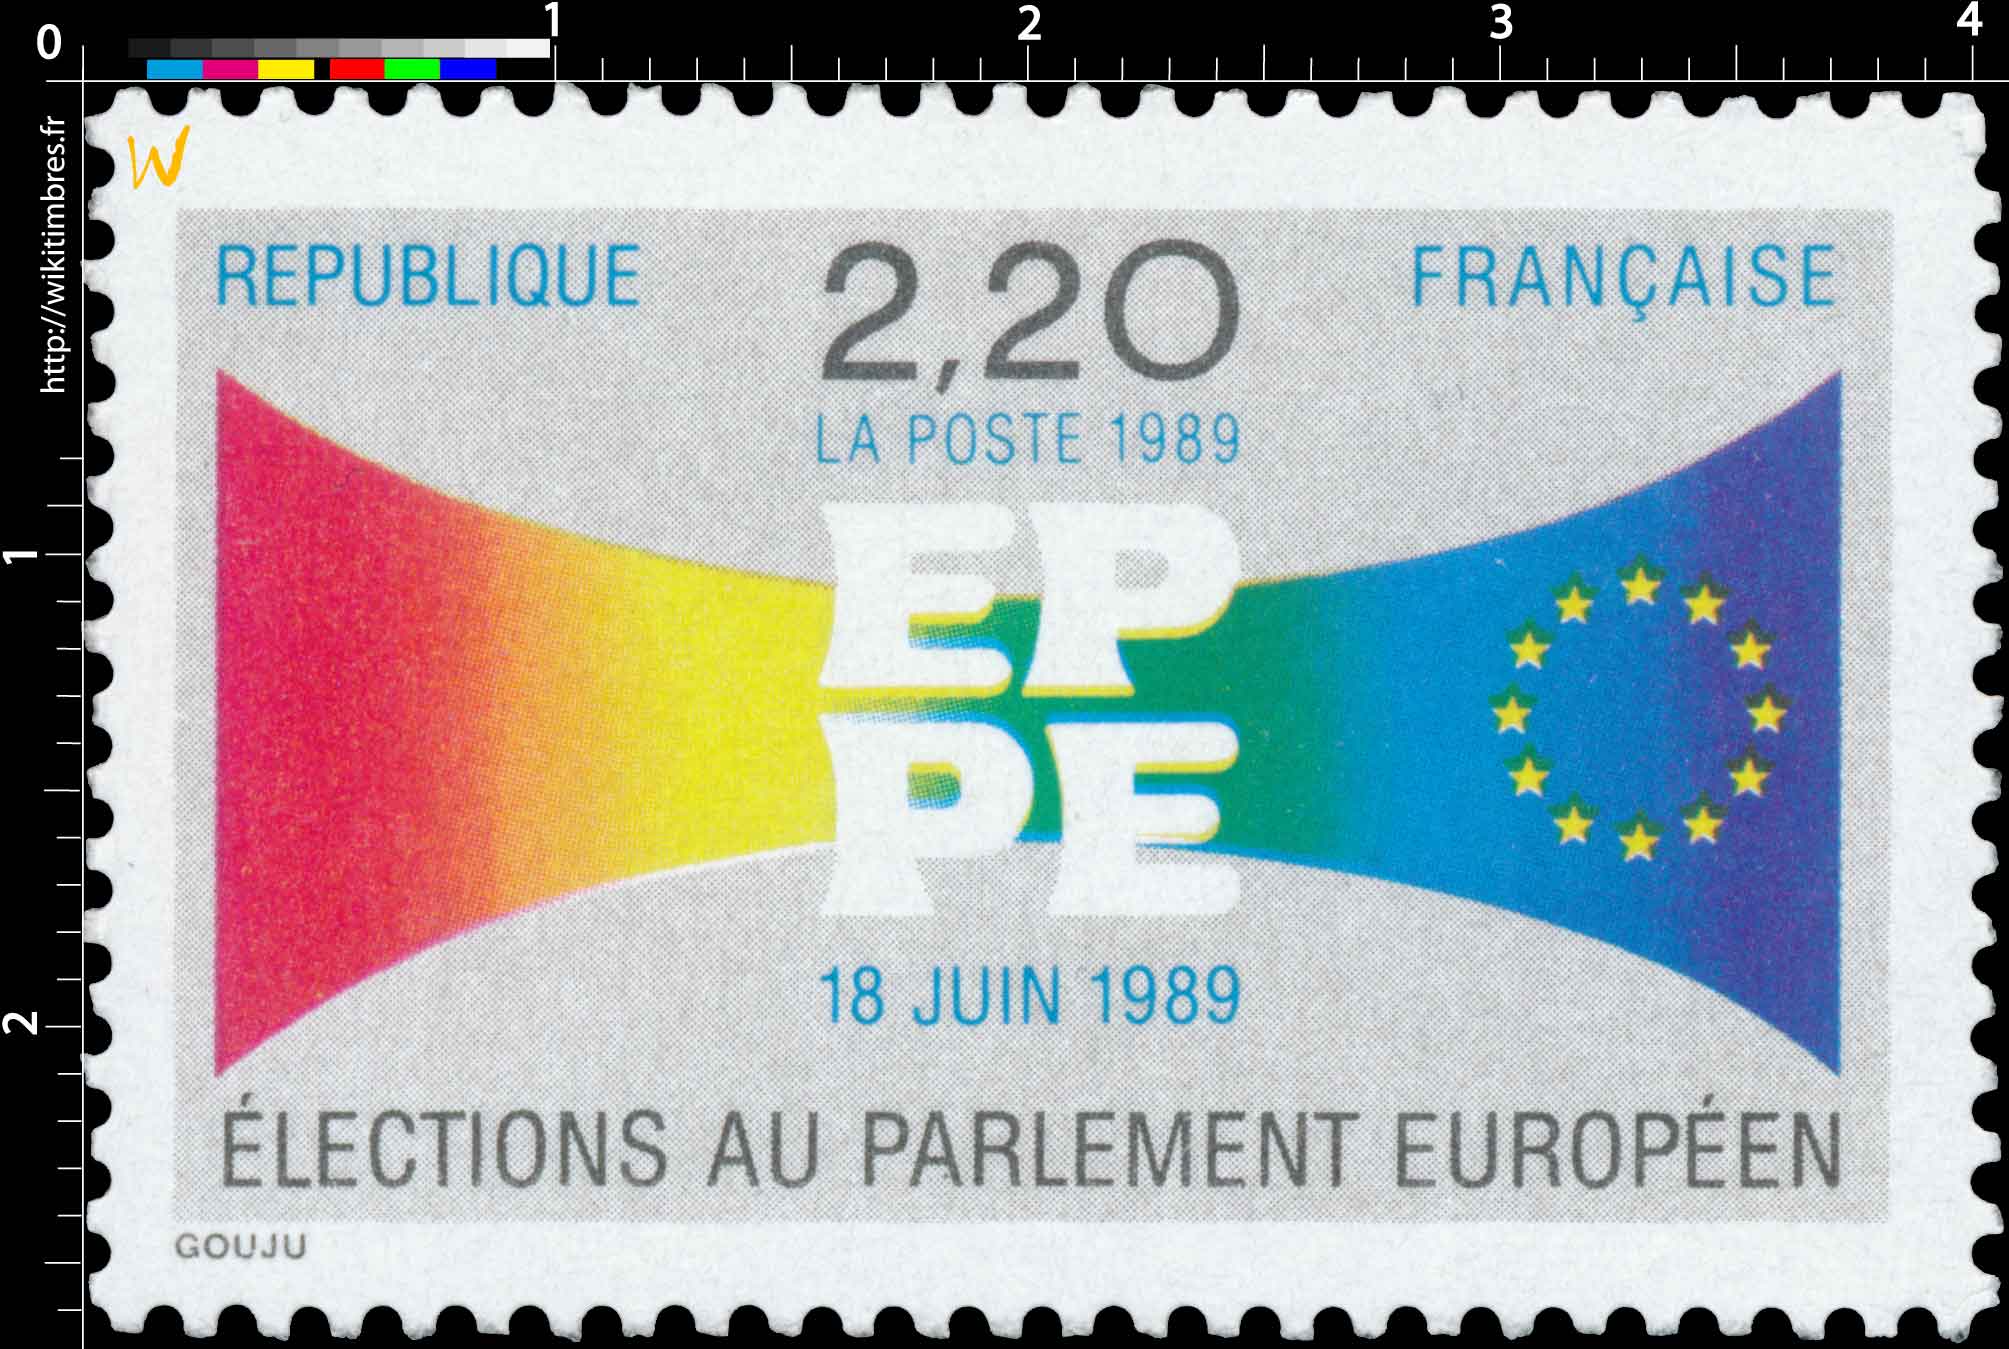 1989 EPPE 18 JUIN 1989 ÉLECTIONS AU PARLEMENT EUROPÉEN